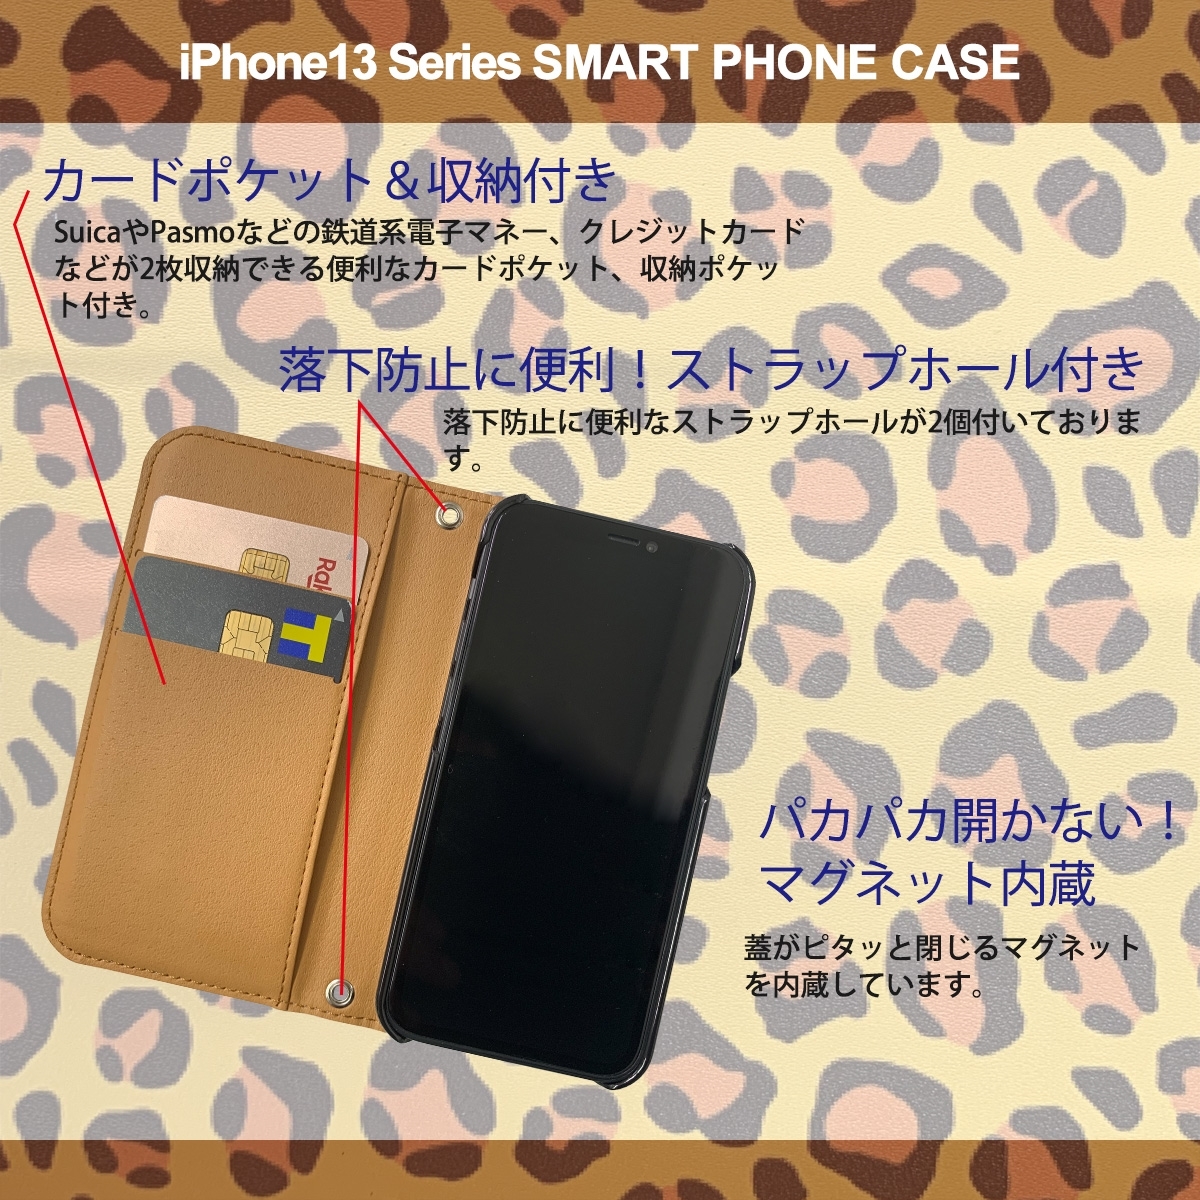 1】 iPhone13 Pro Max 手帳型 アイフォン ケース スマホカバー PVC レザー アニマル柄 ヒョウ柄 ブラウン